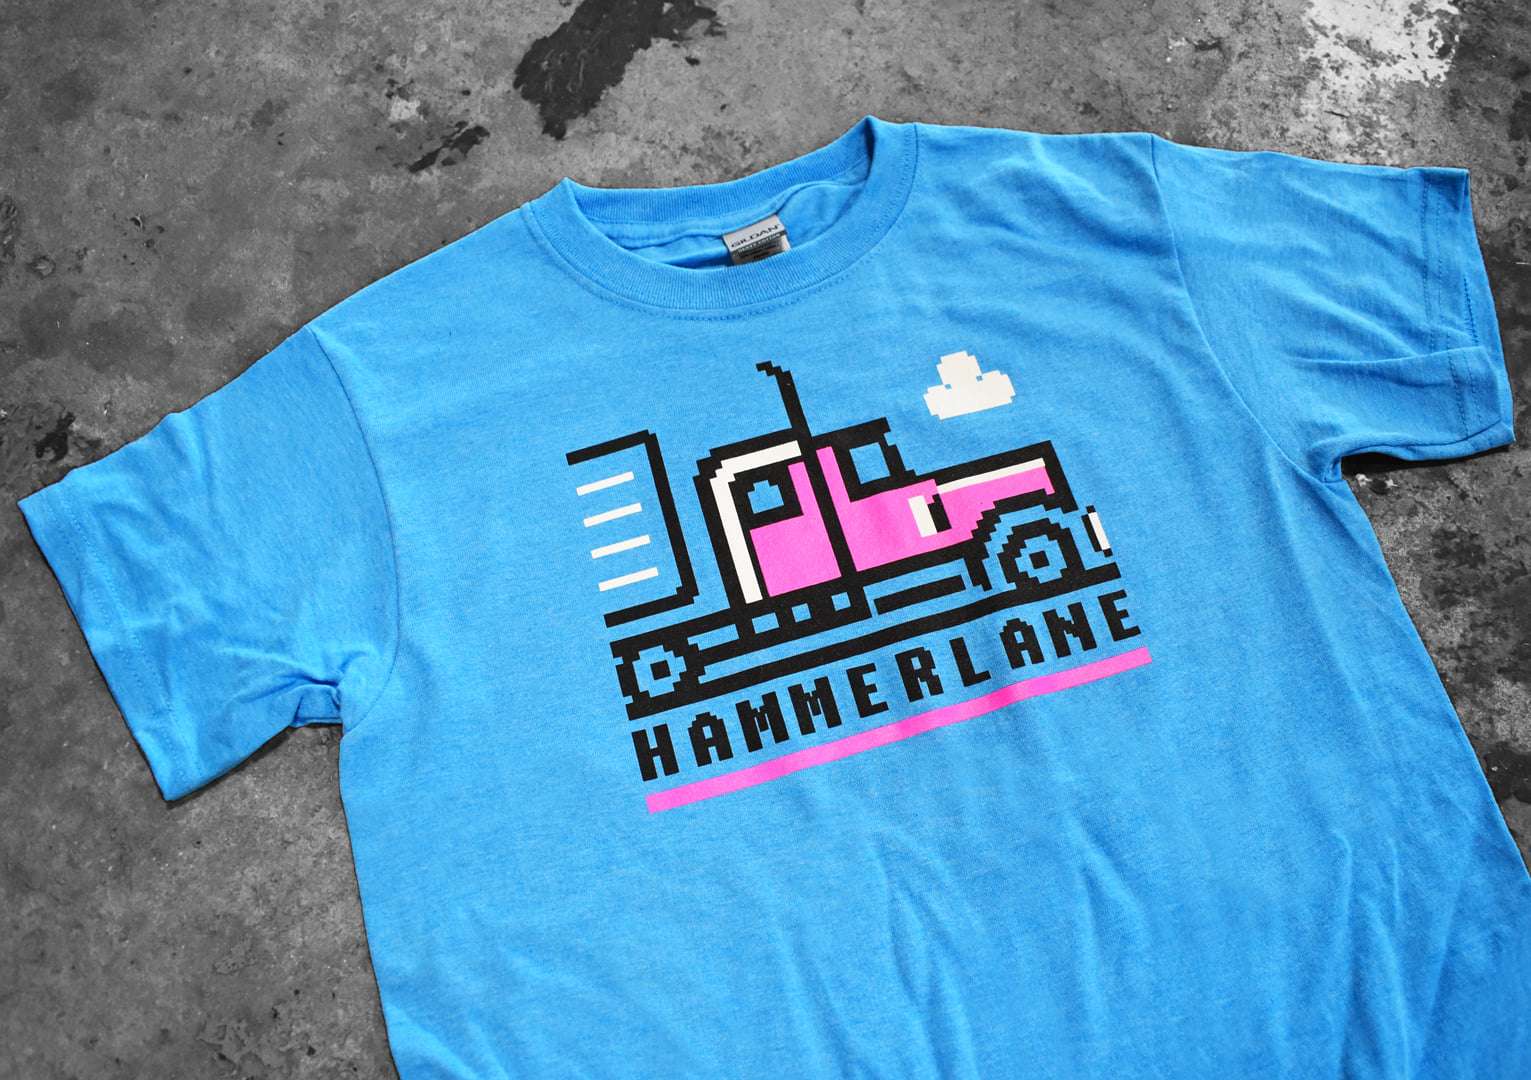 Hammer lane - Truck driver, Hammerlane trucker